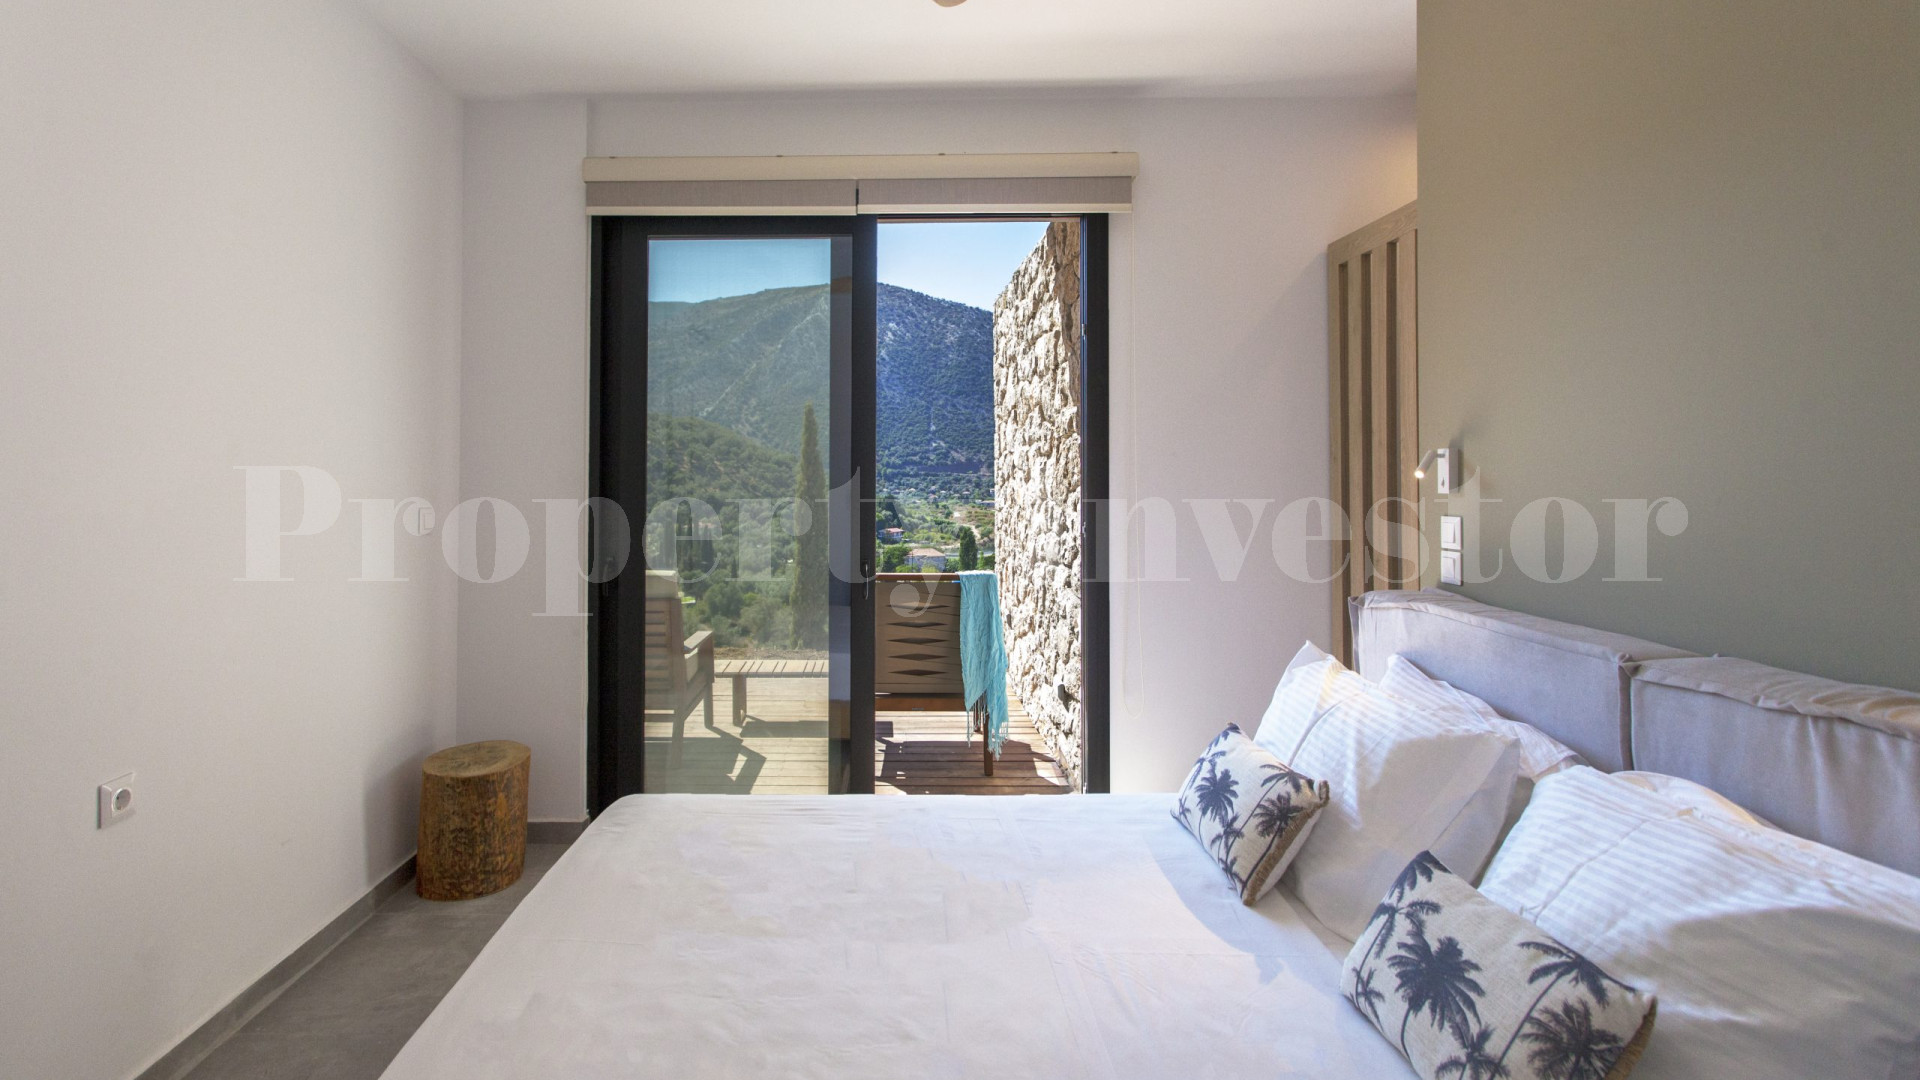 Новая роскошная вилла на 4 спальни с захватывающим панорамным видом на о. Лефкада, Греция